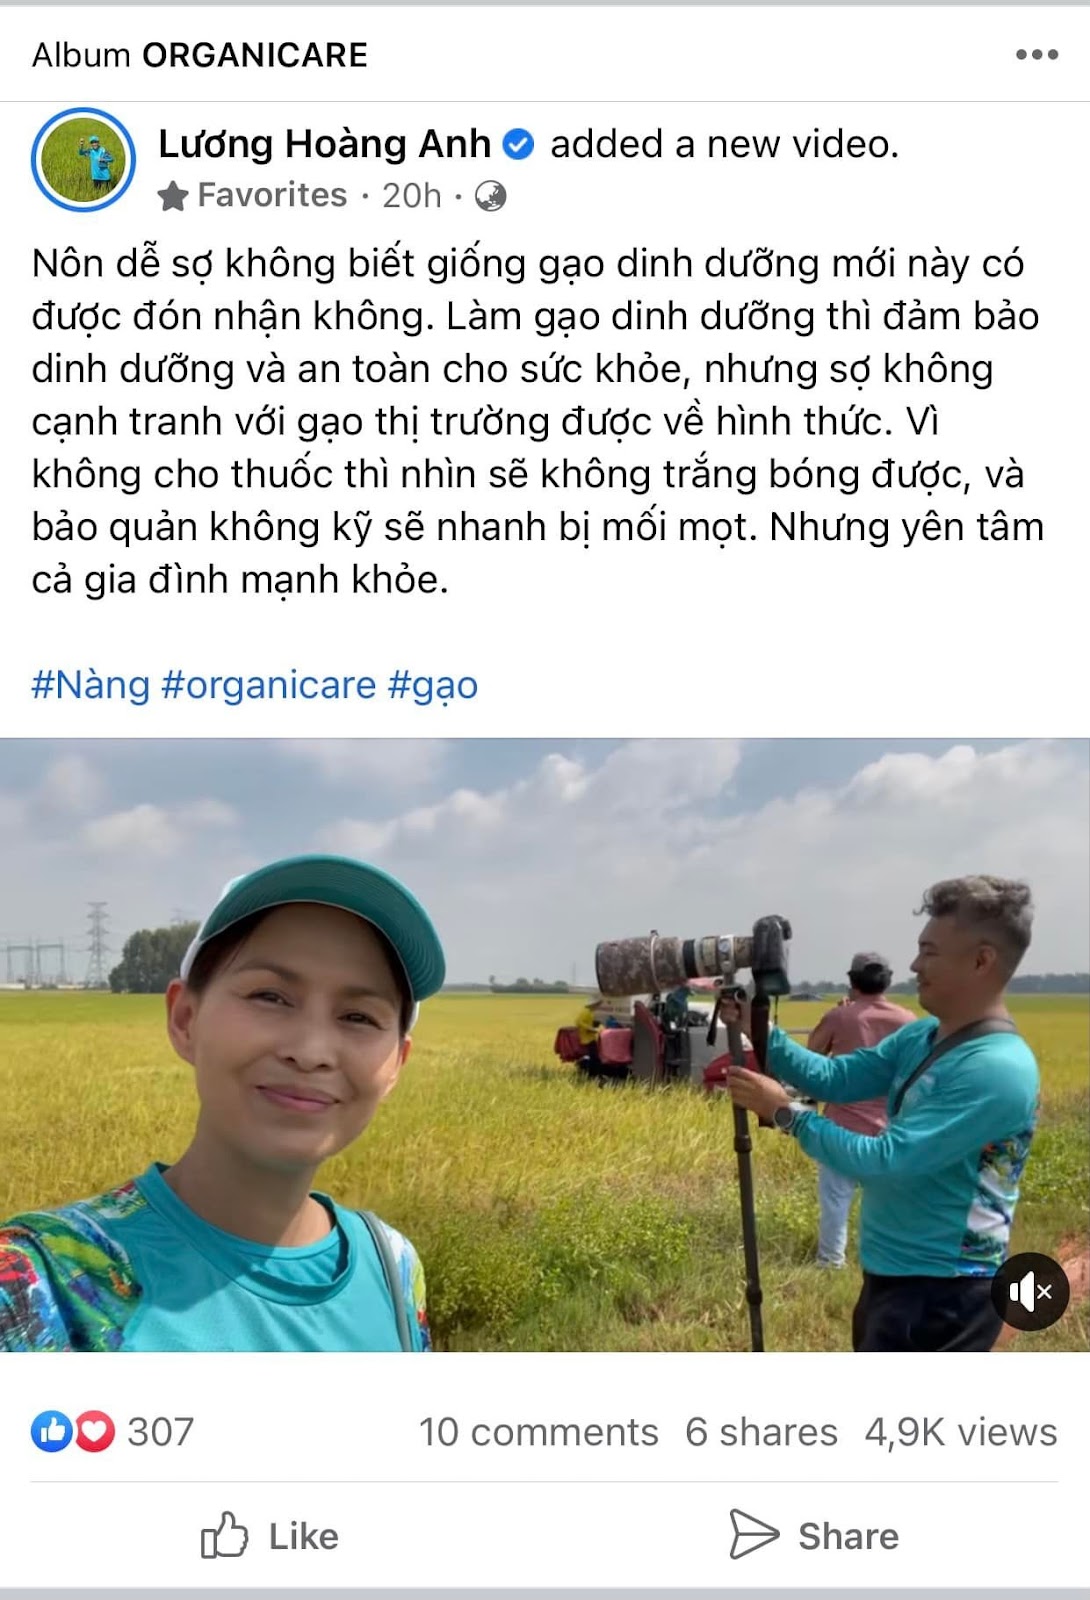 Facebooker Lương Hoàng Anh – vợ cũ Huy Khánh gây tranh cãi khi chê “gạo thị trường có thuốc” - ảnh 2